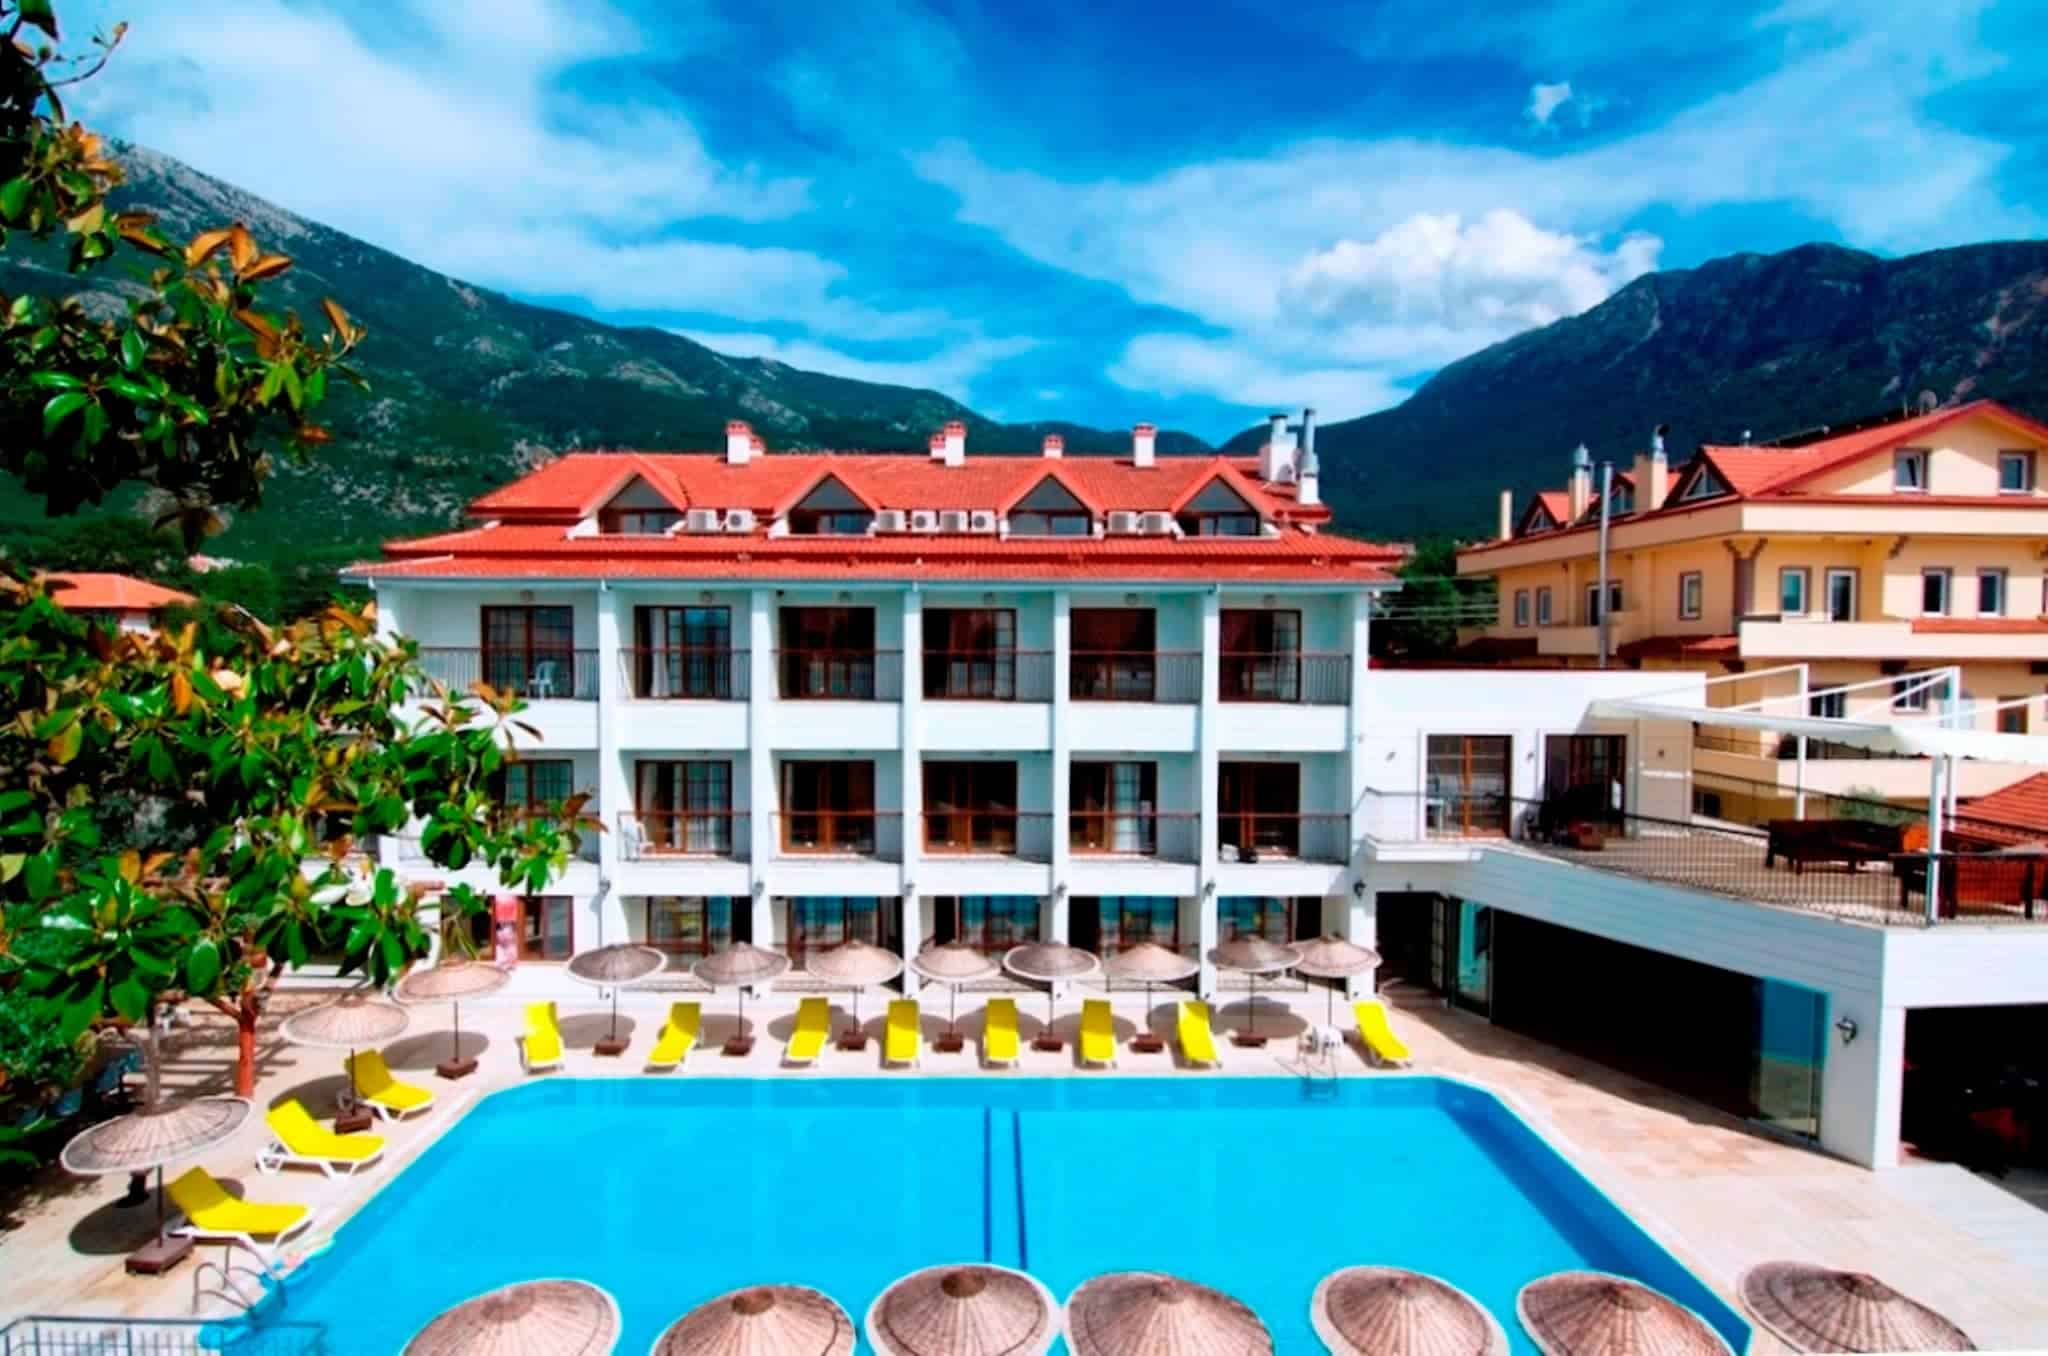 Golden Life Resort Hotel Spa